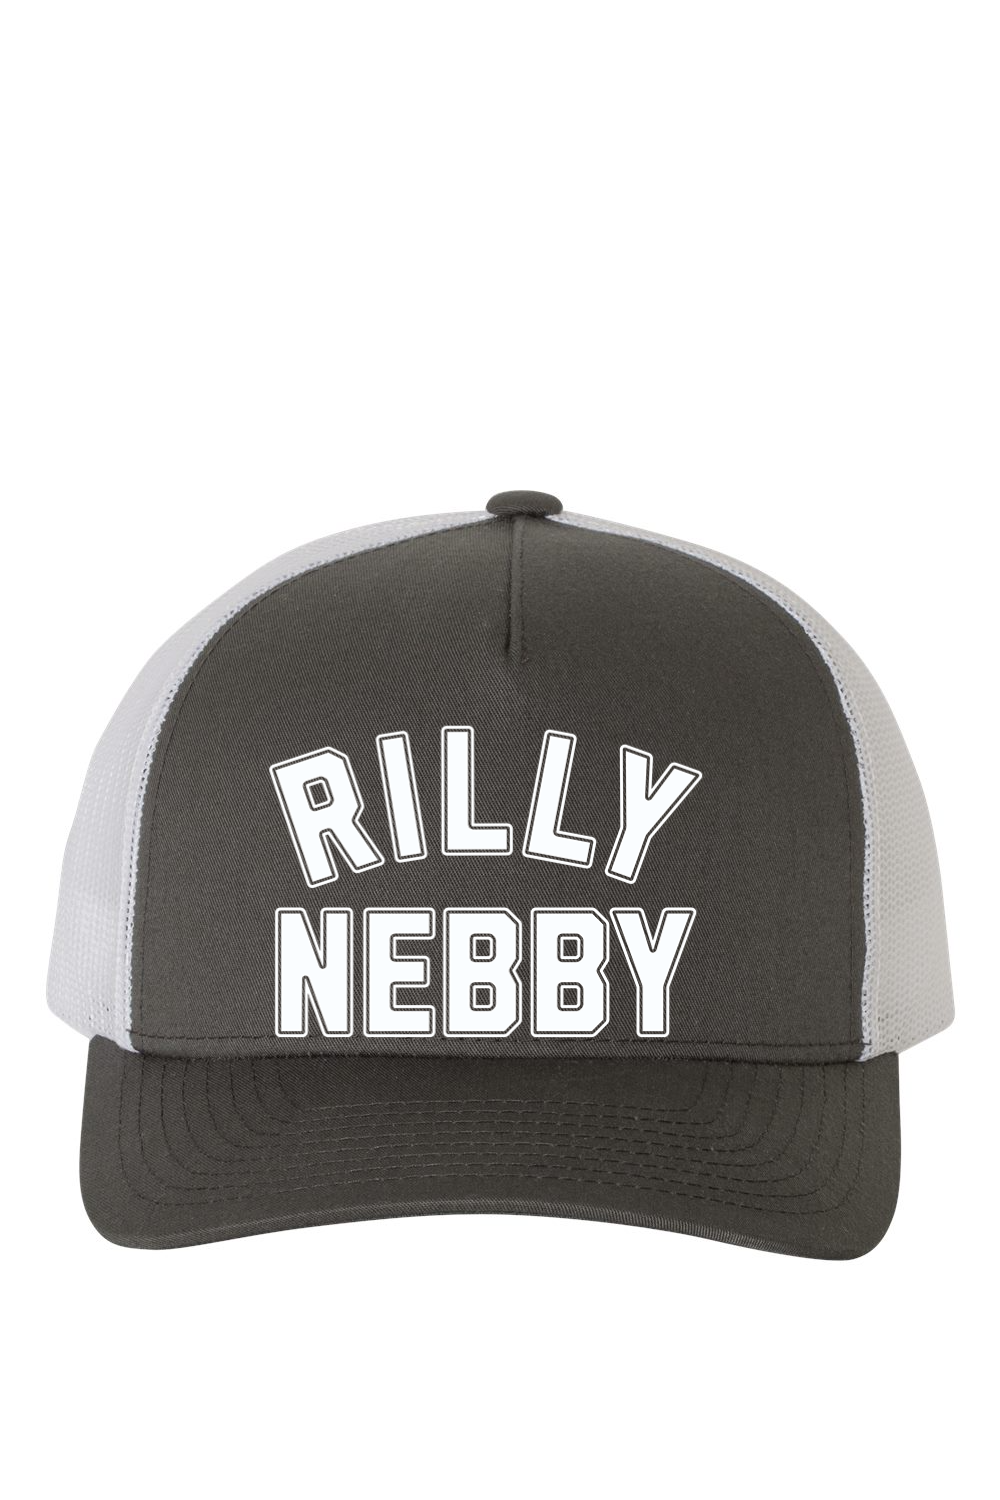 Rilly Nebby - Classic Snapback Hat - Yinzylvania